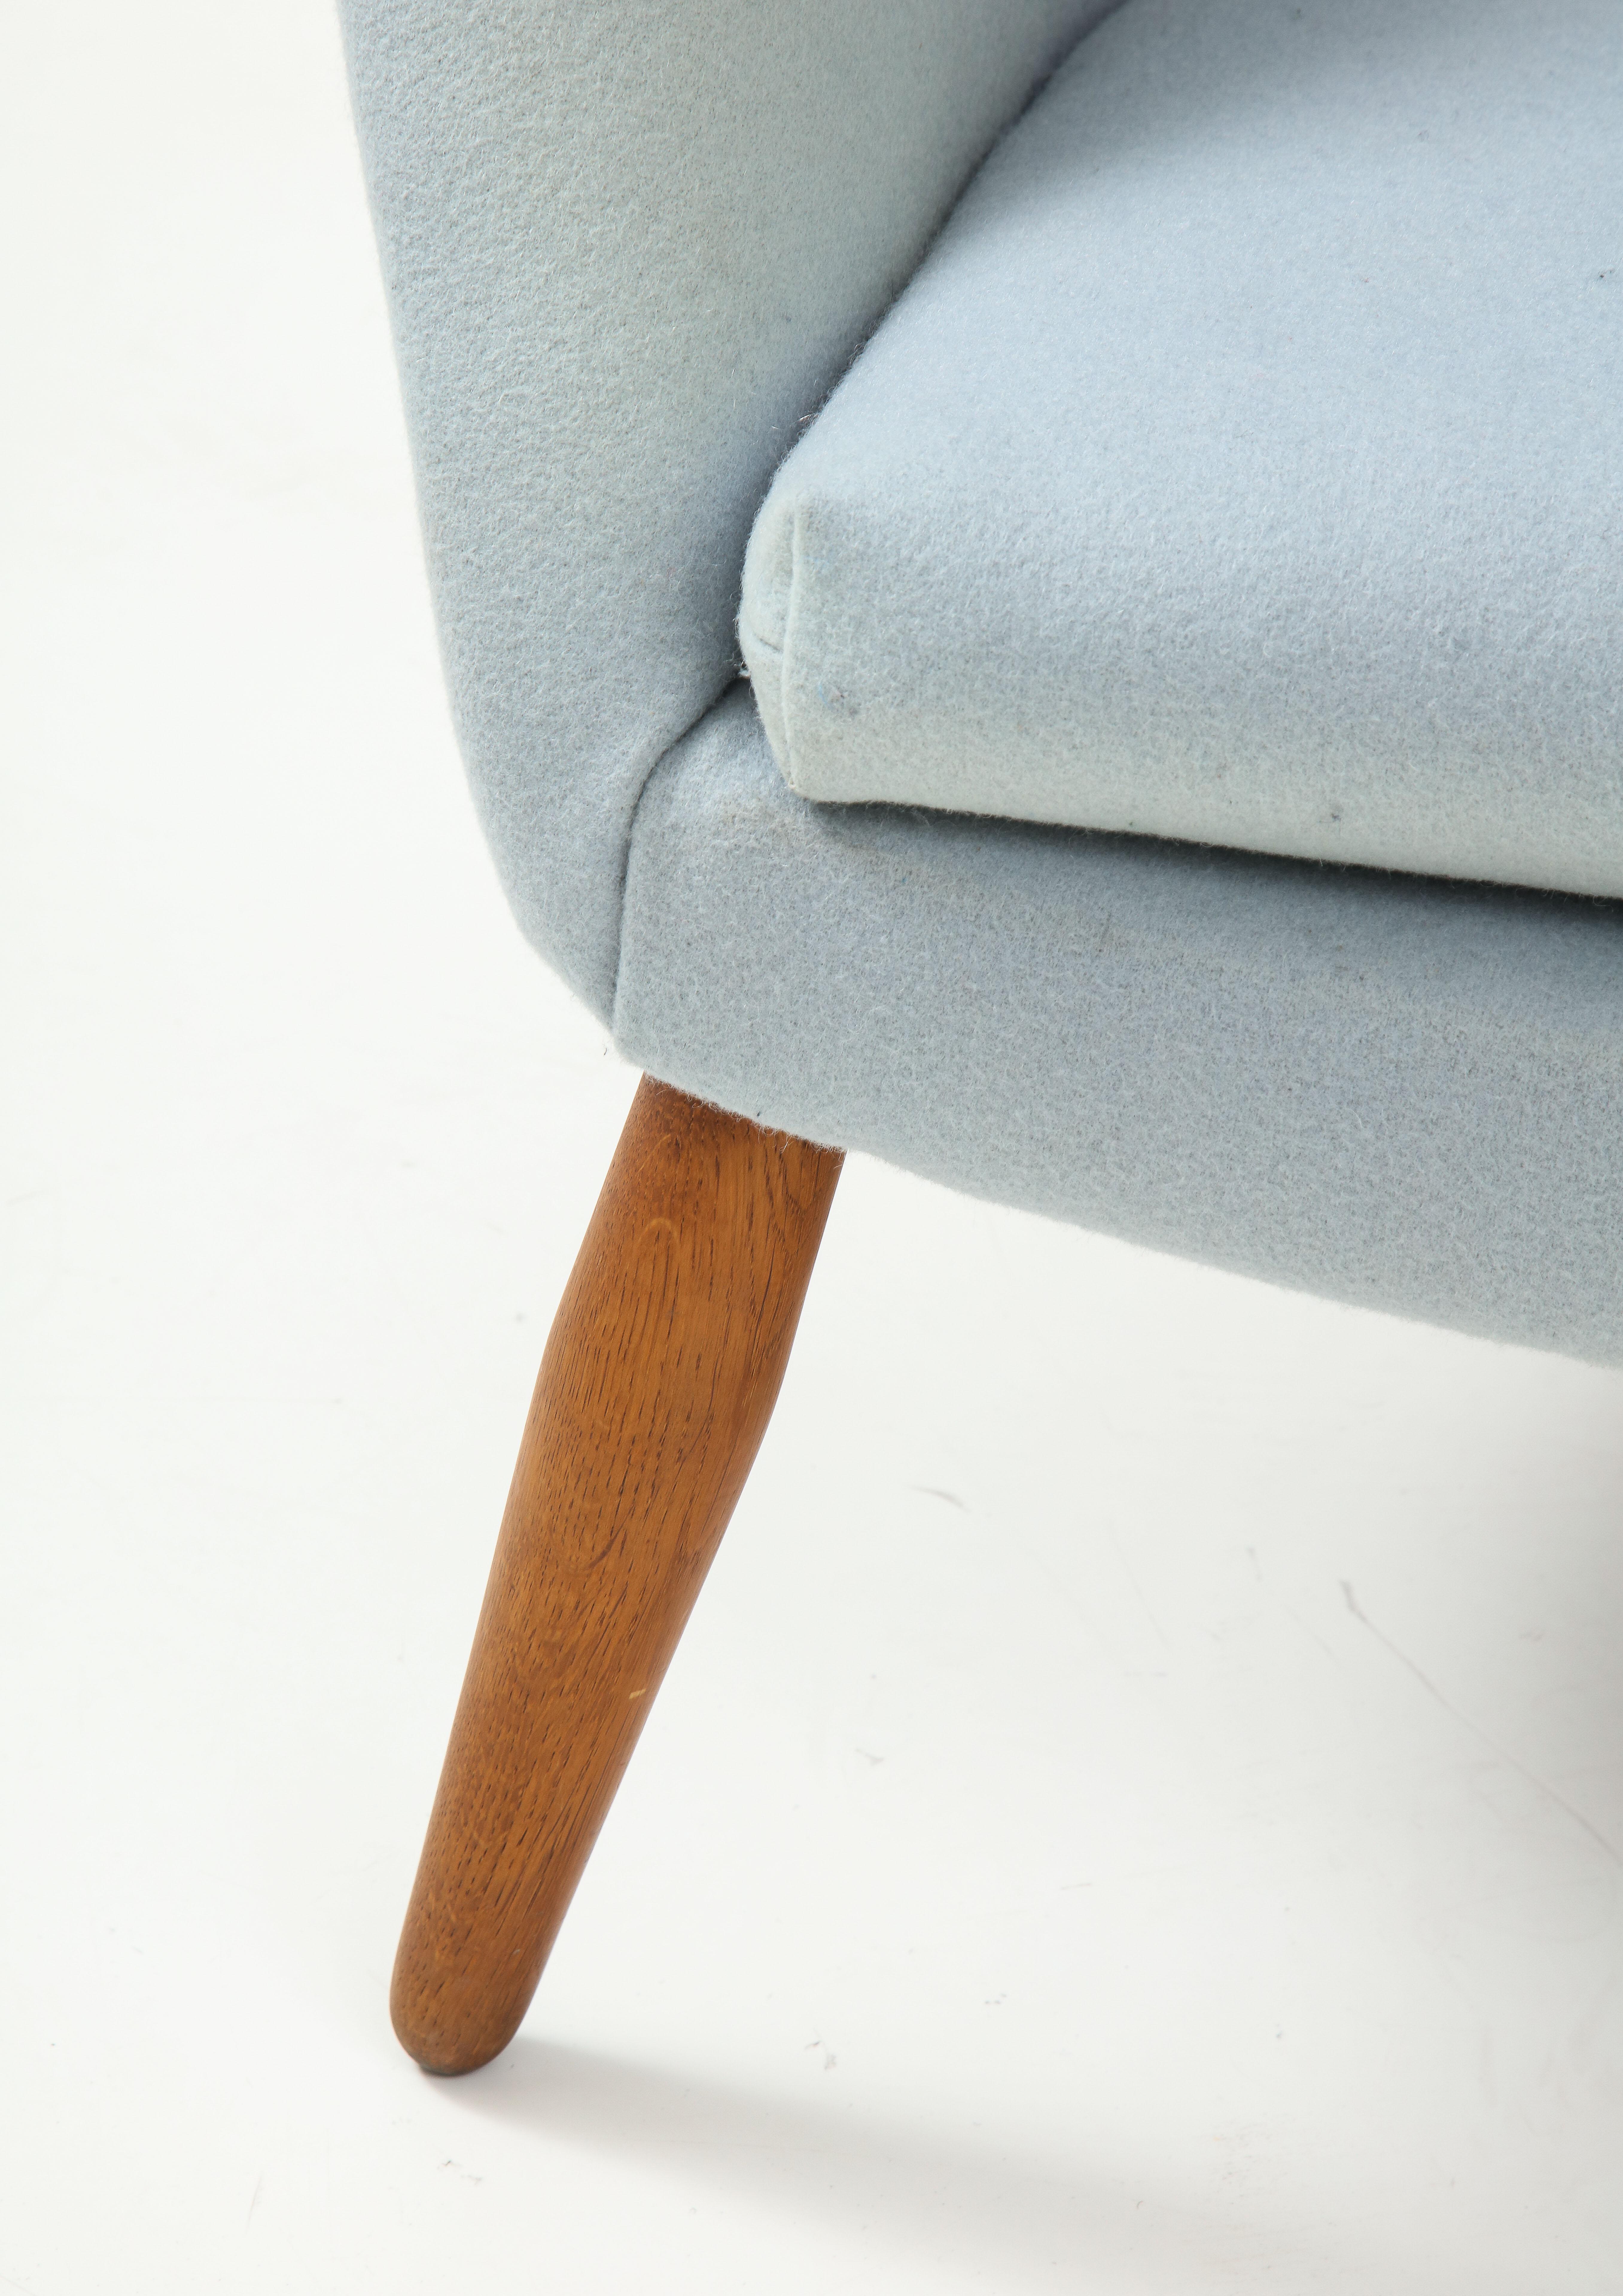 Arnold Madsen, Loungesessel, Modell MS-9. Ursprünglich wurde dieser Stuhl Nanna Ditzel zugeschrieben, doch nach neueren Erkenntnissen ist er in Wirklichkeit ein Entwurf von Arnold Madsen für Madsen & Schubel. Eine organische und aufschlussreiche